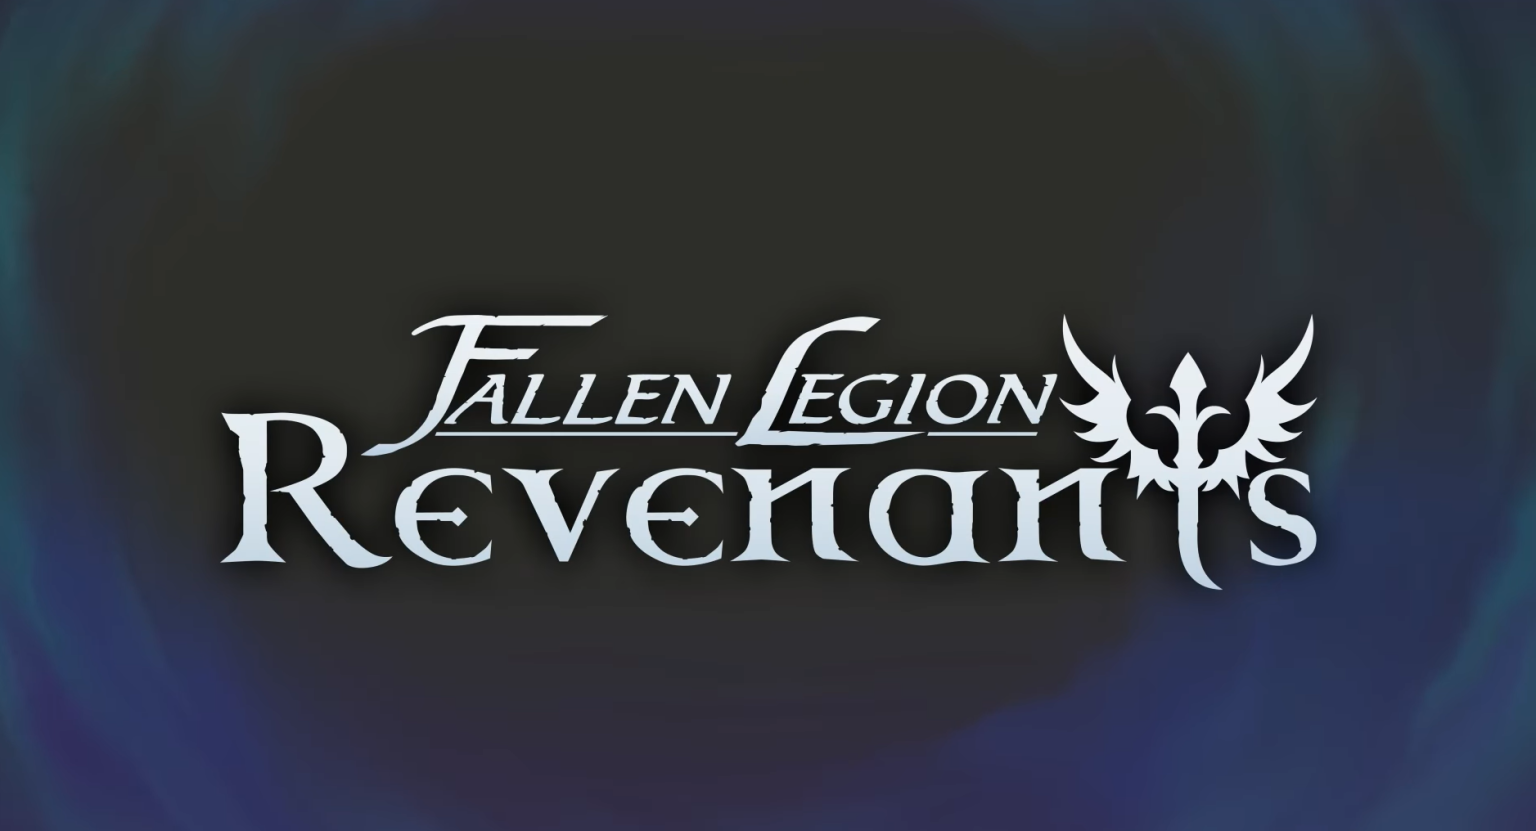 Fallen Legion Revenants for windows download free